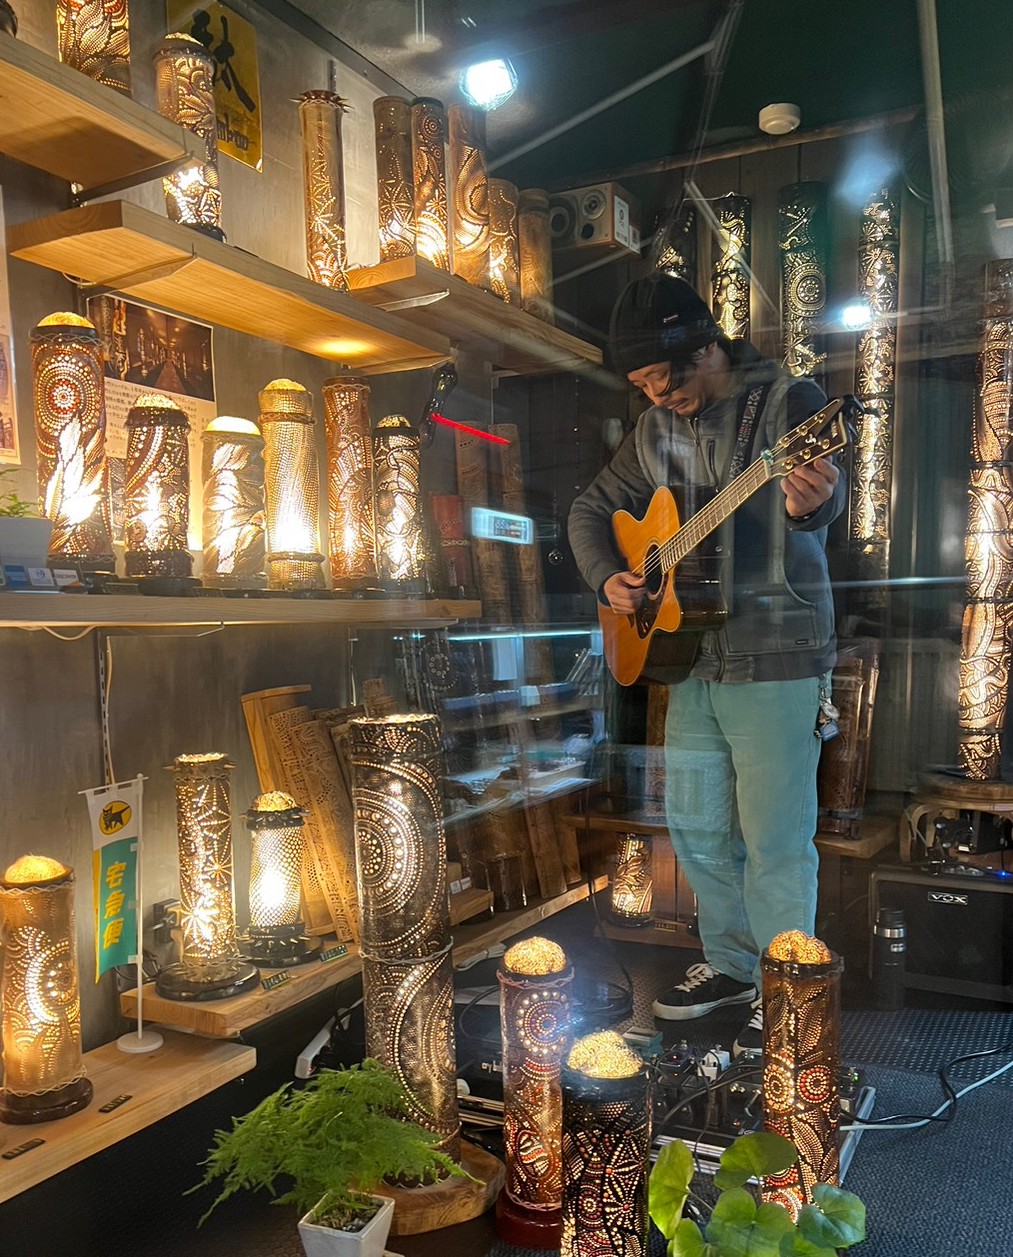 橘通りにある駄bamboo店内にてアコースティックギターを弾いてくれたshowzo君